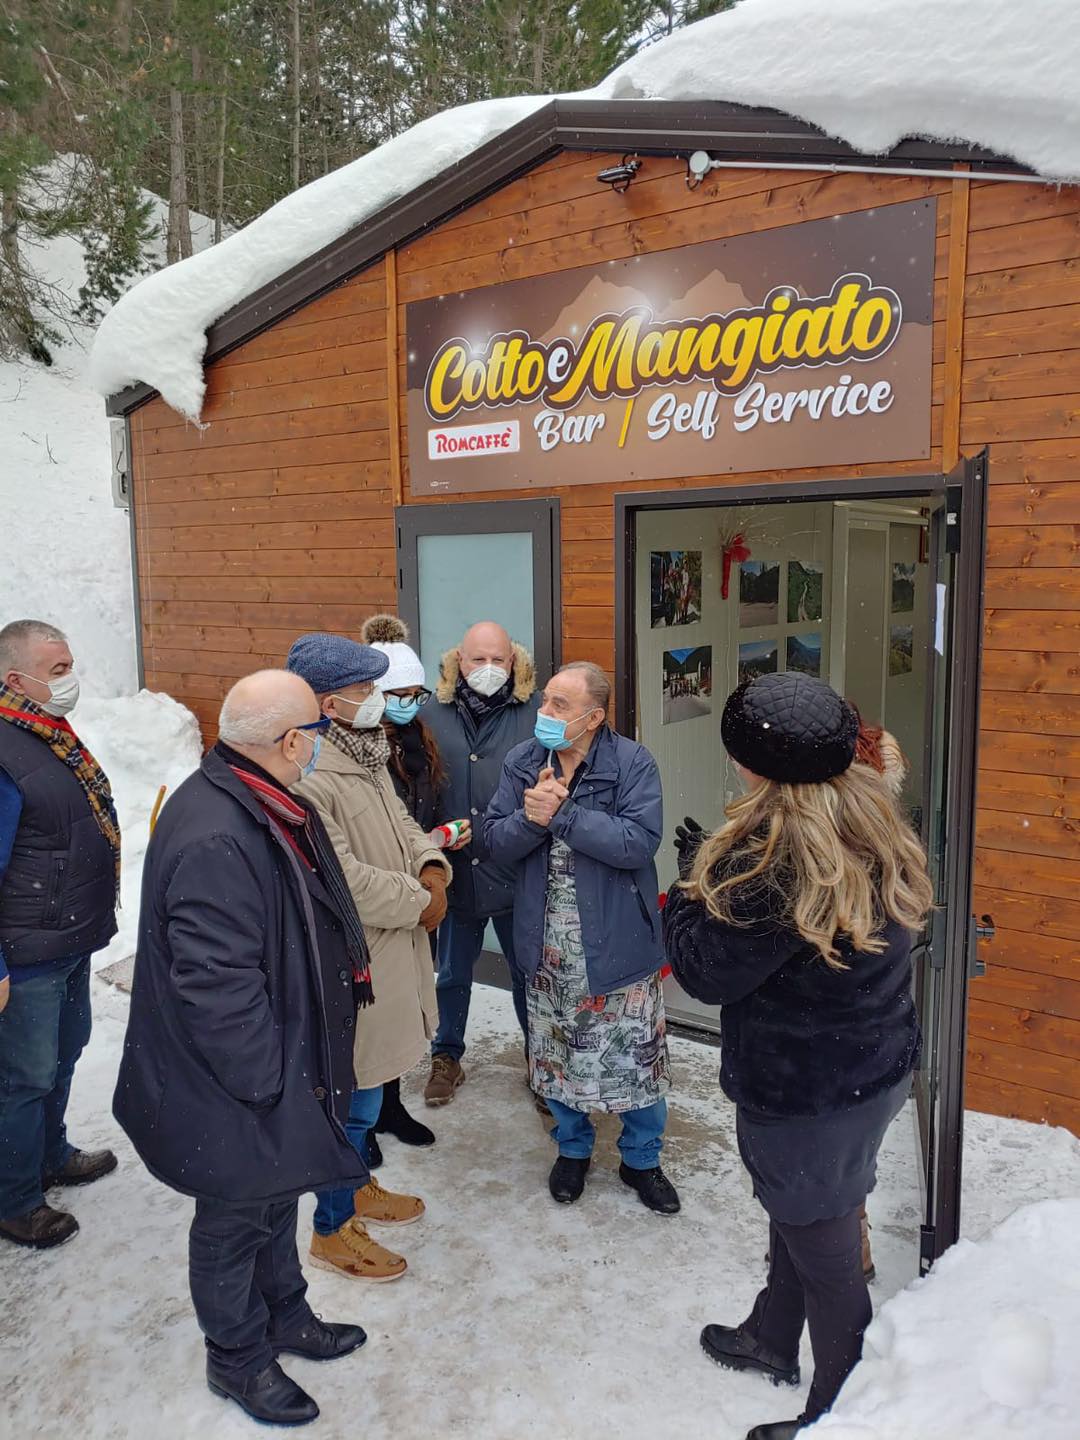 Ussita – Tanta gente sulla neve a Frontignano, inaugurato “Cotto e mangiato”